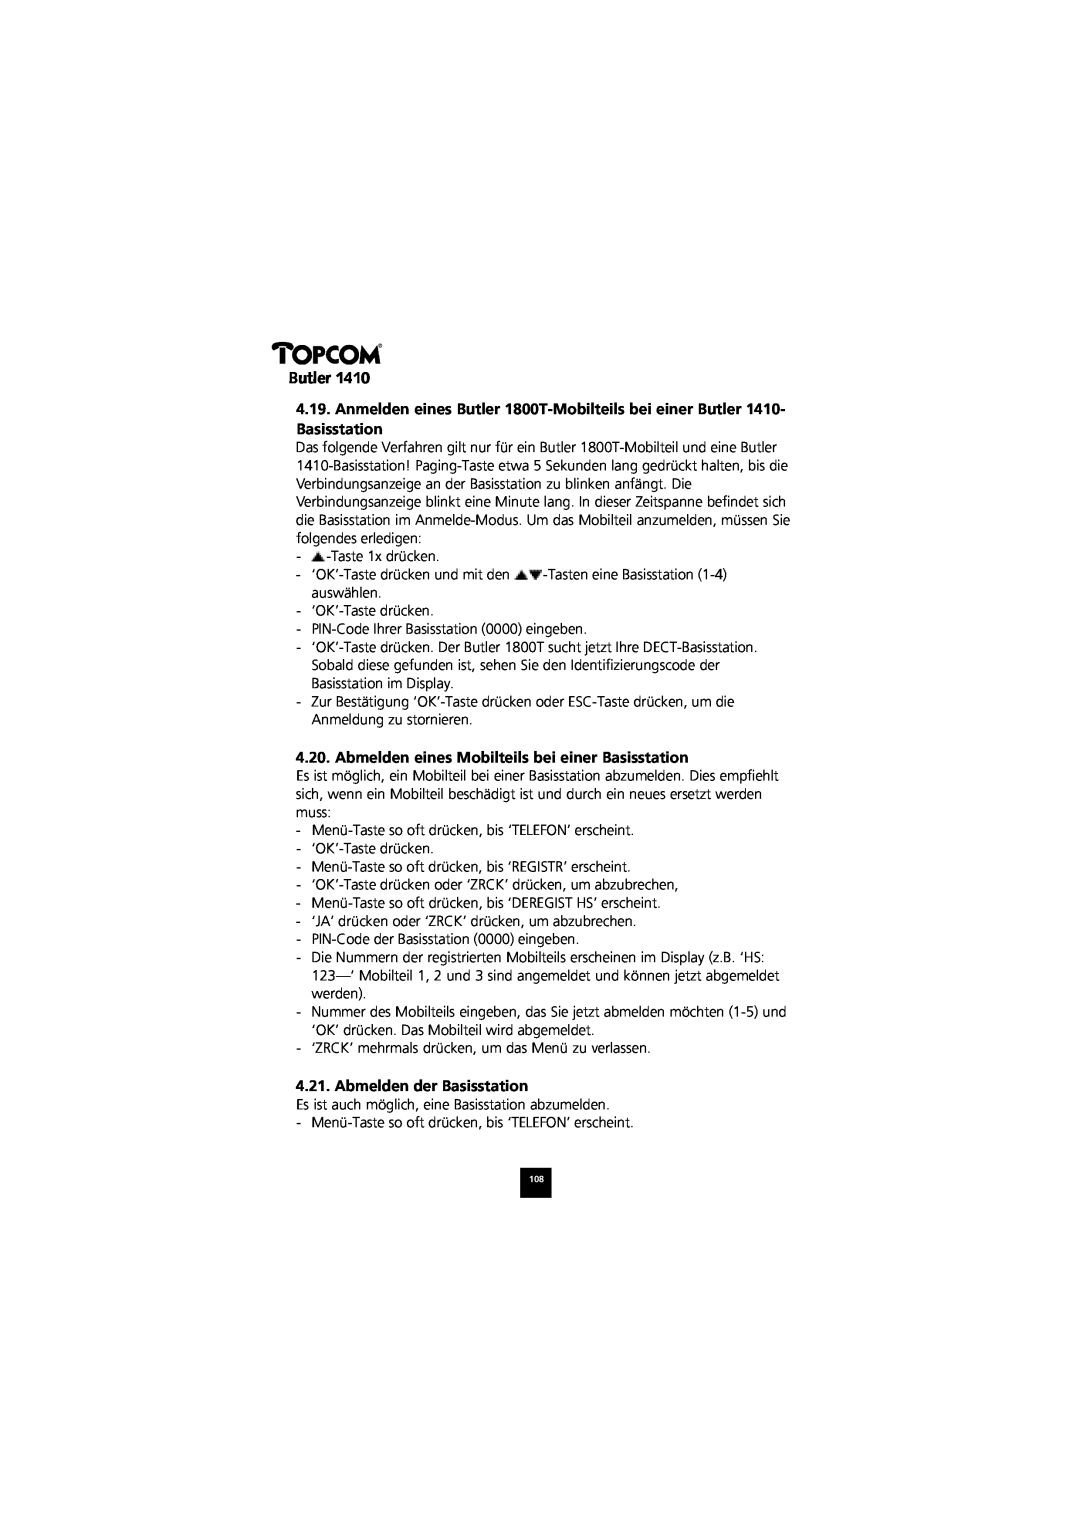 Topcom 1410 manual Abmelden eines Mobilteils bei einer Basisstation, Abmelden der Basisstation, Butler 